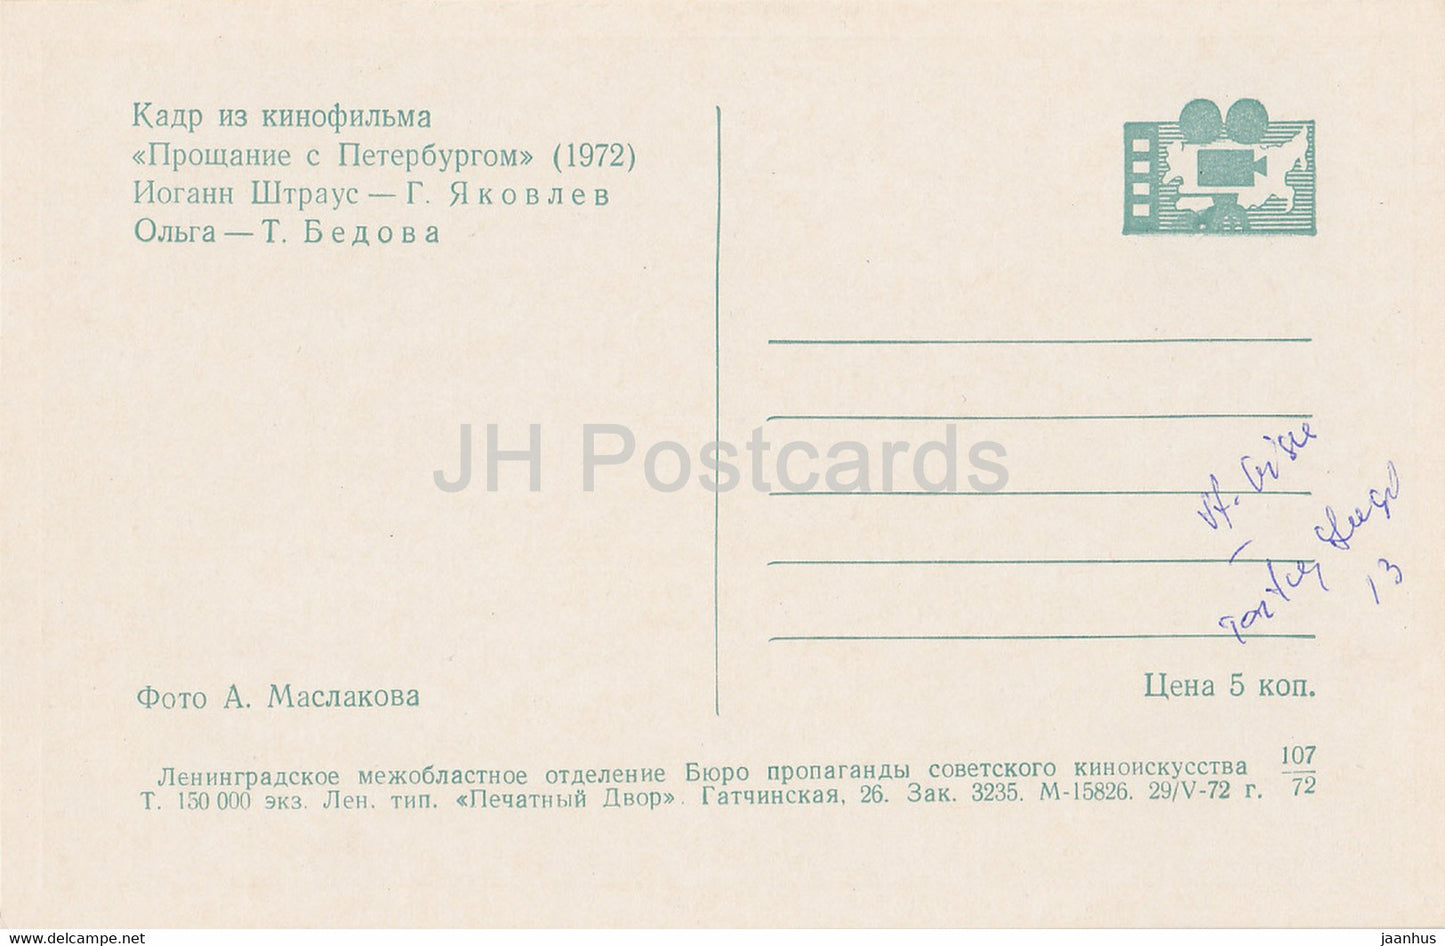 Abschied von St. Petersburg – Schauspielerin T. Bedova, Schauspieler G. Yakovlev – Film – Film – Sowjet – 1972 – Russland UdSSR – unbenutzt